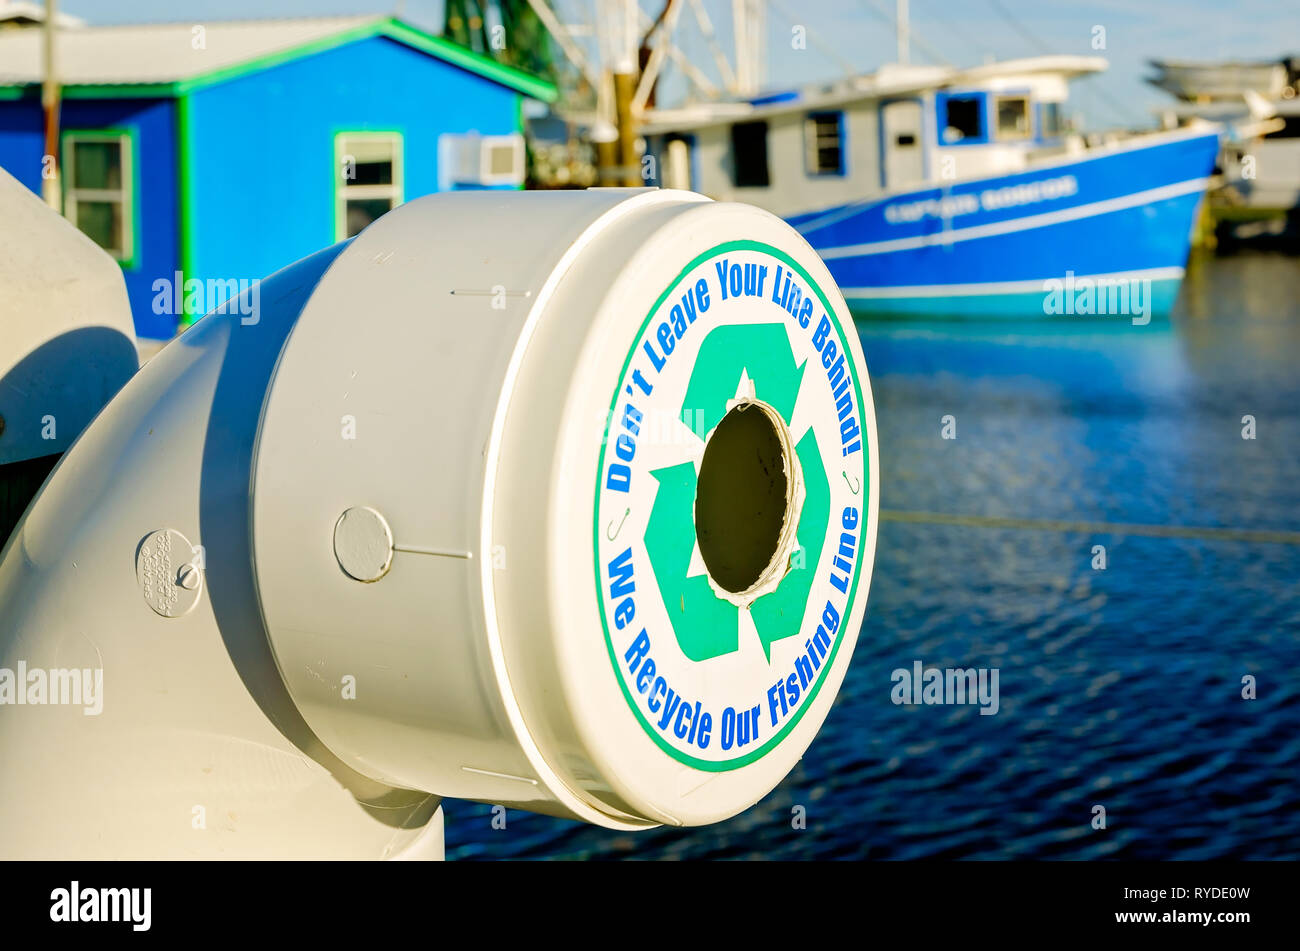 Un monofilament de recyclage est installé sur un quai pour l'élimination des engins de pêche dans la région de Pass Christian (Mississippi). Banque D'Images